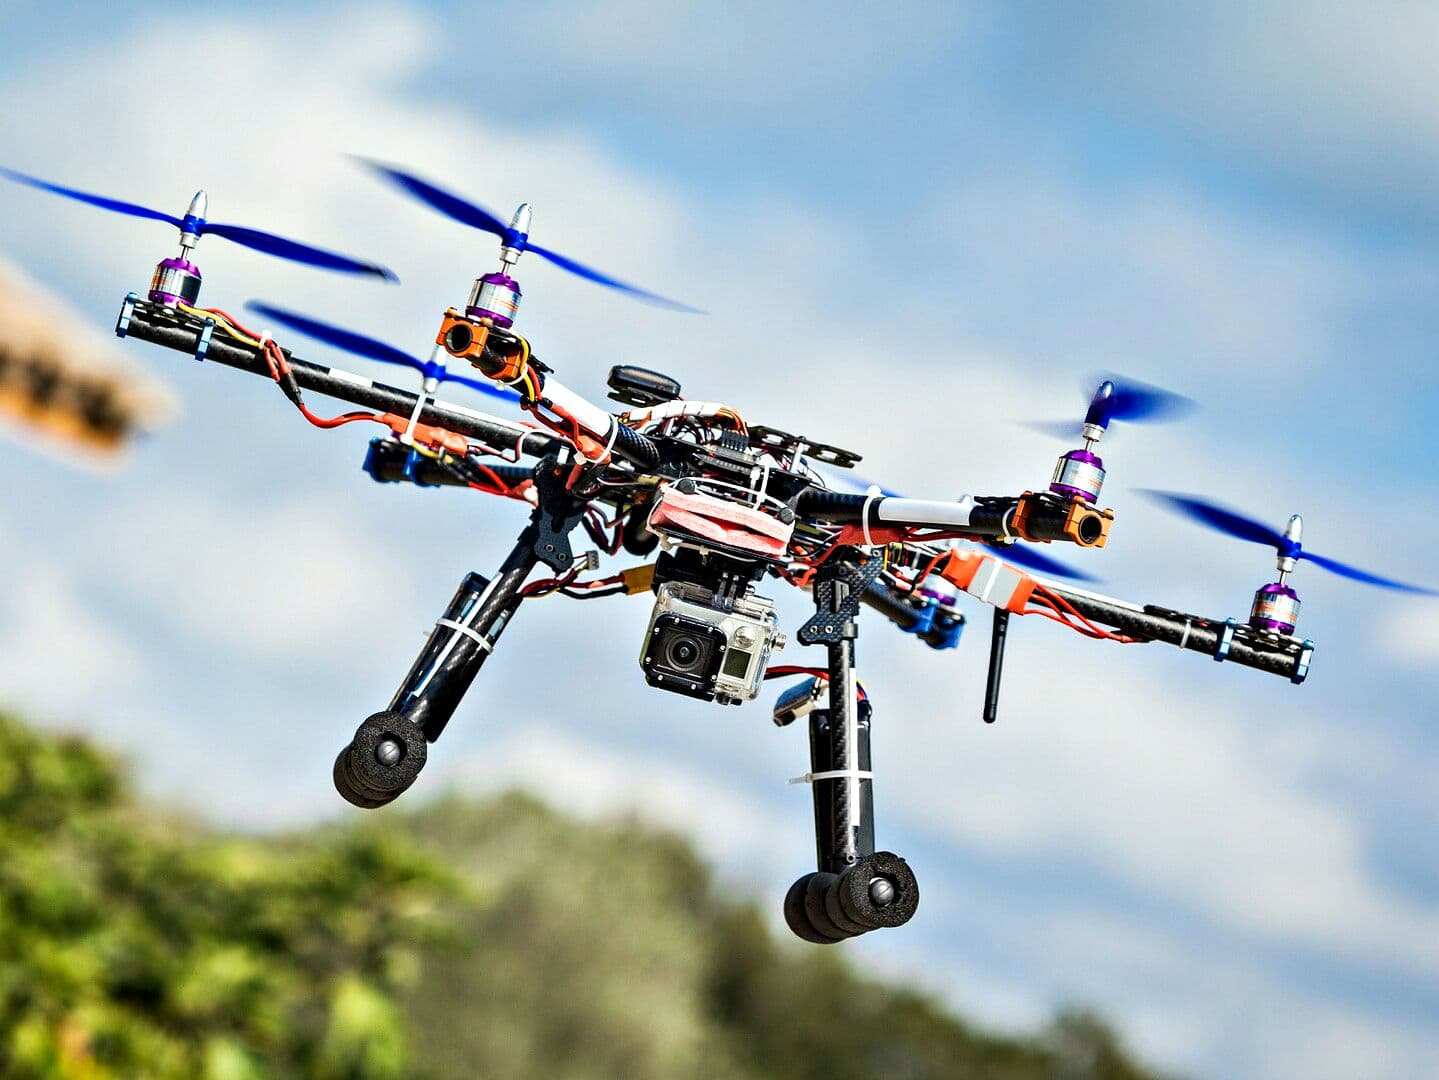 Тайланд. Новости: Пользователи дронов должны регистрироваться, чтобы избежать проблем с законом.